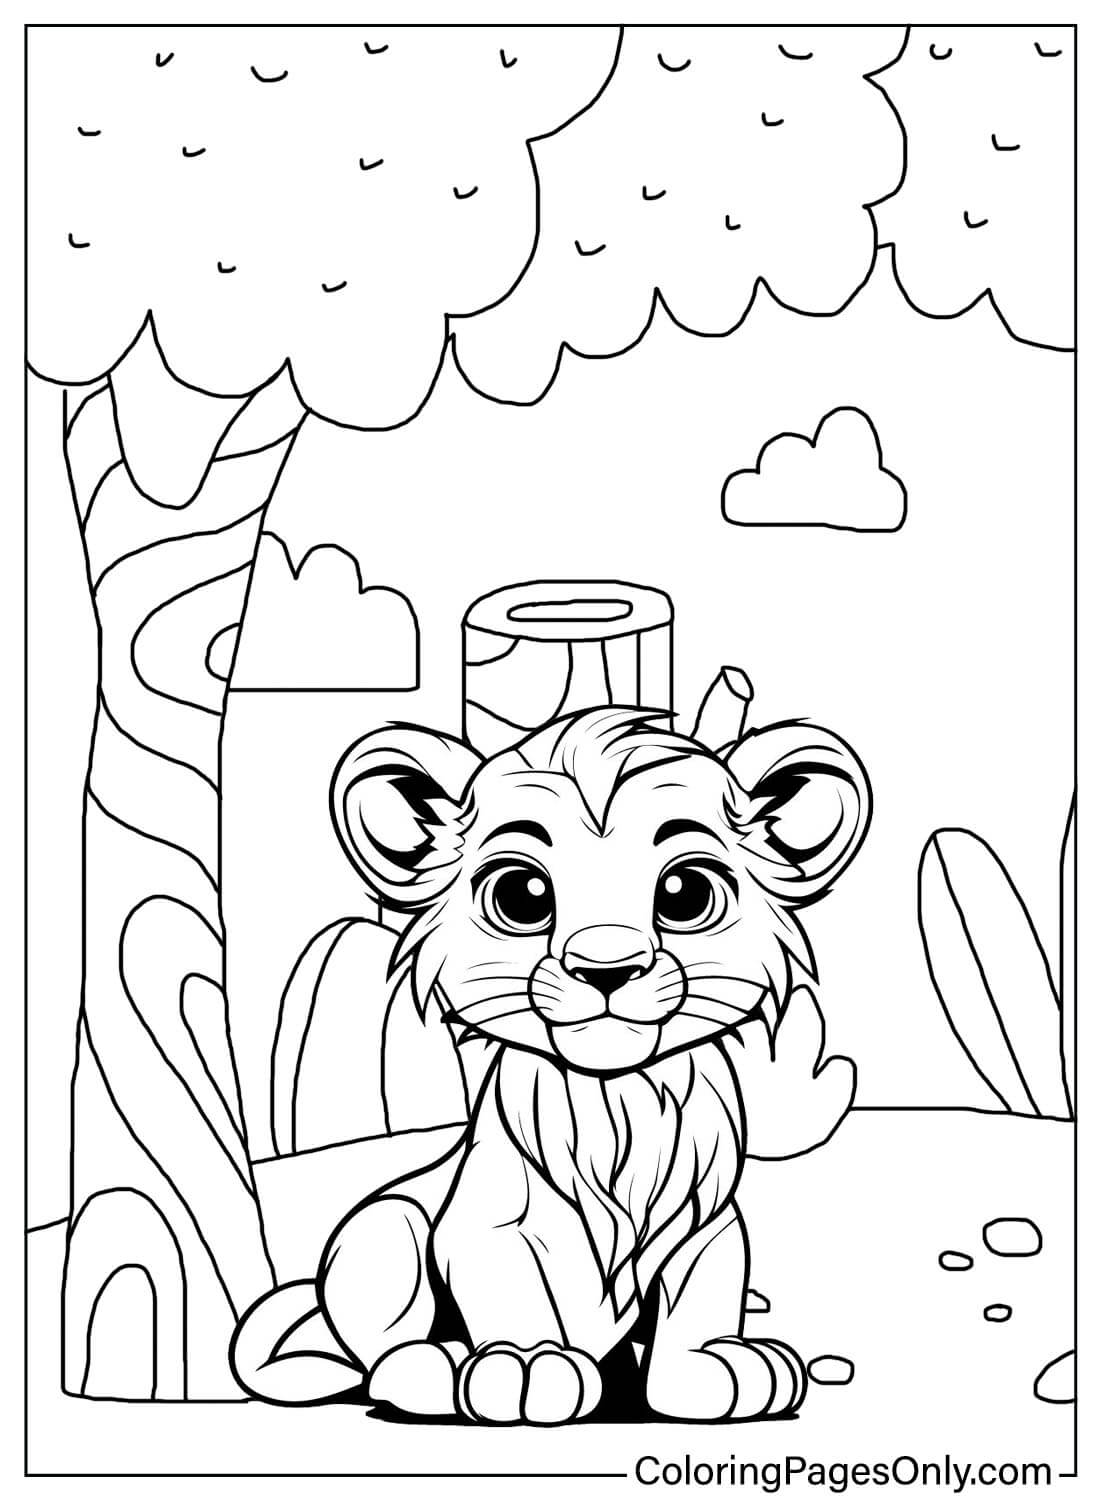 Lion 的狮子彩页